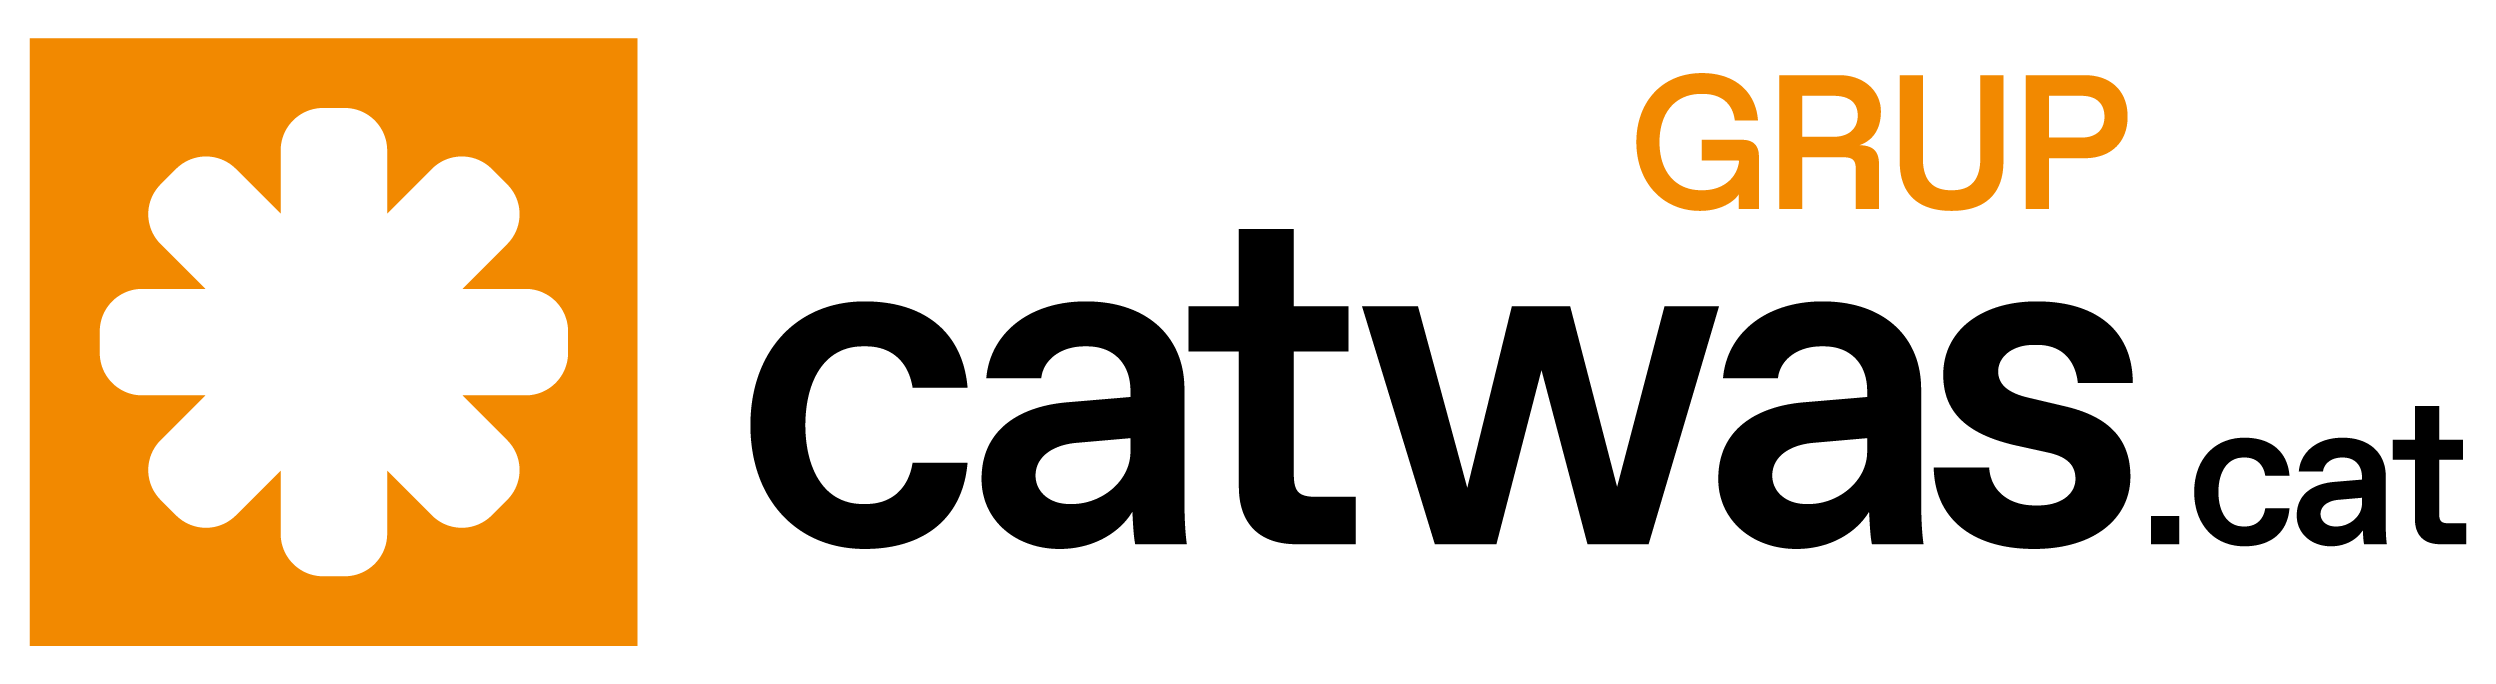 Catwas